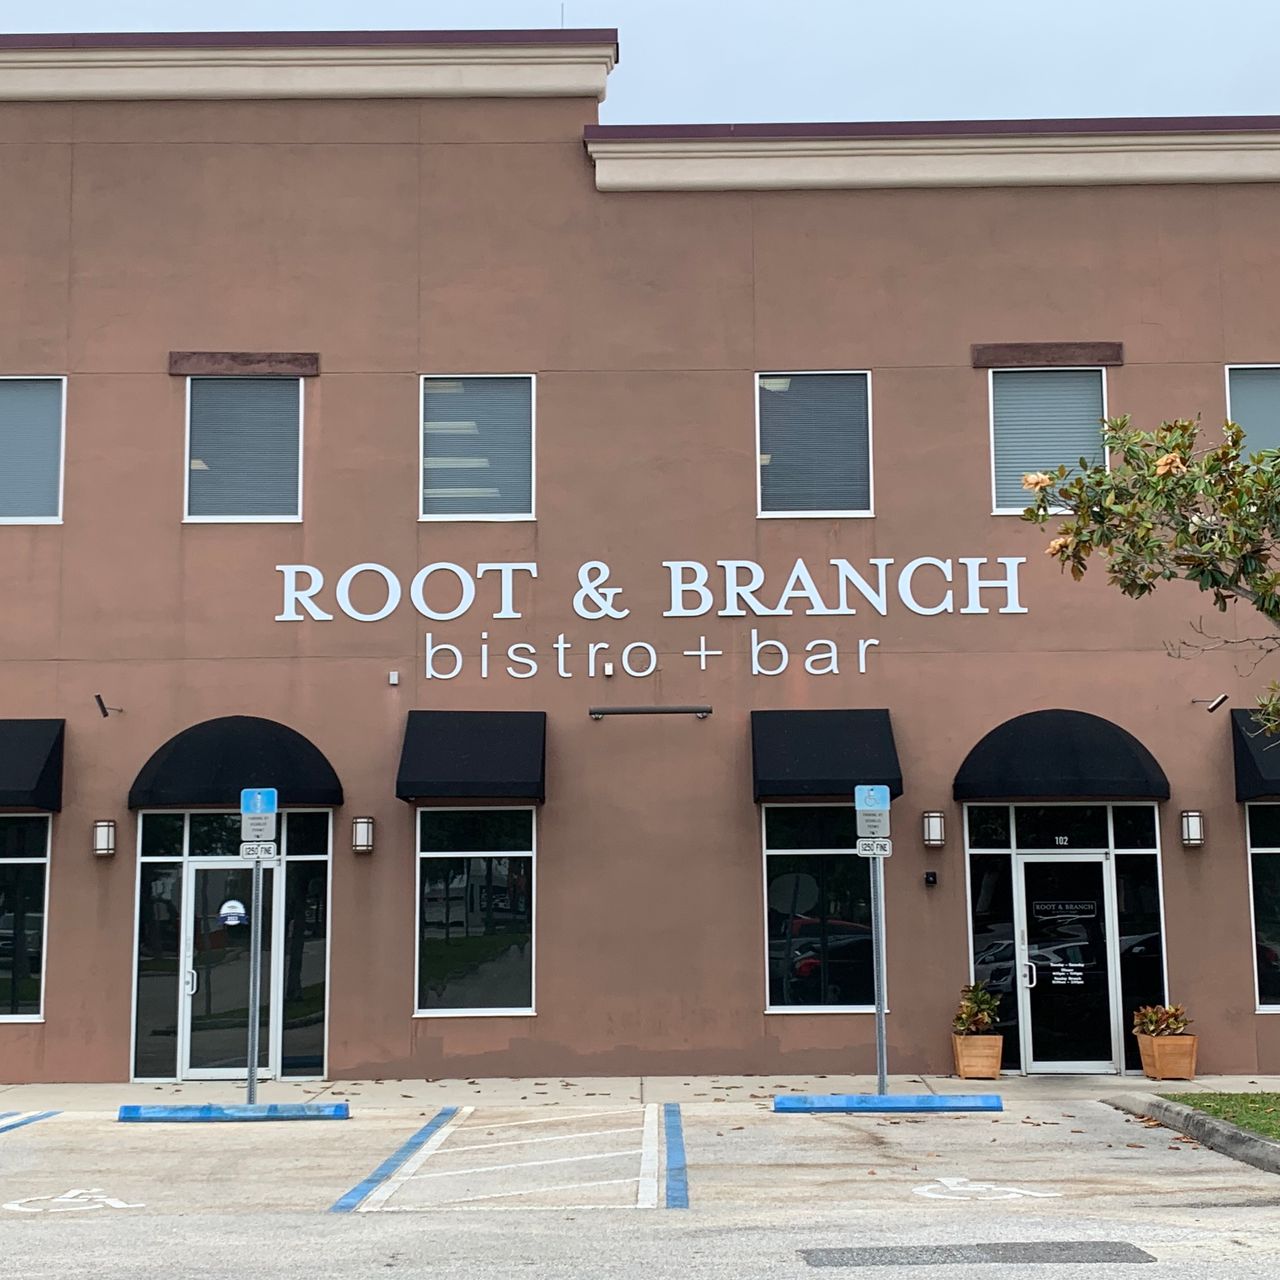 Root & Branch bistro + bar Restaurant - Clermont, FL